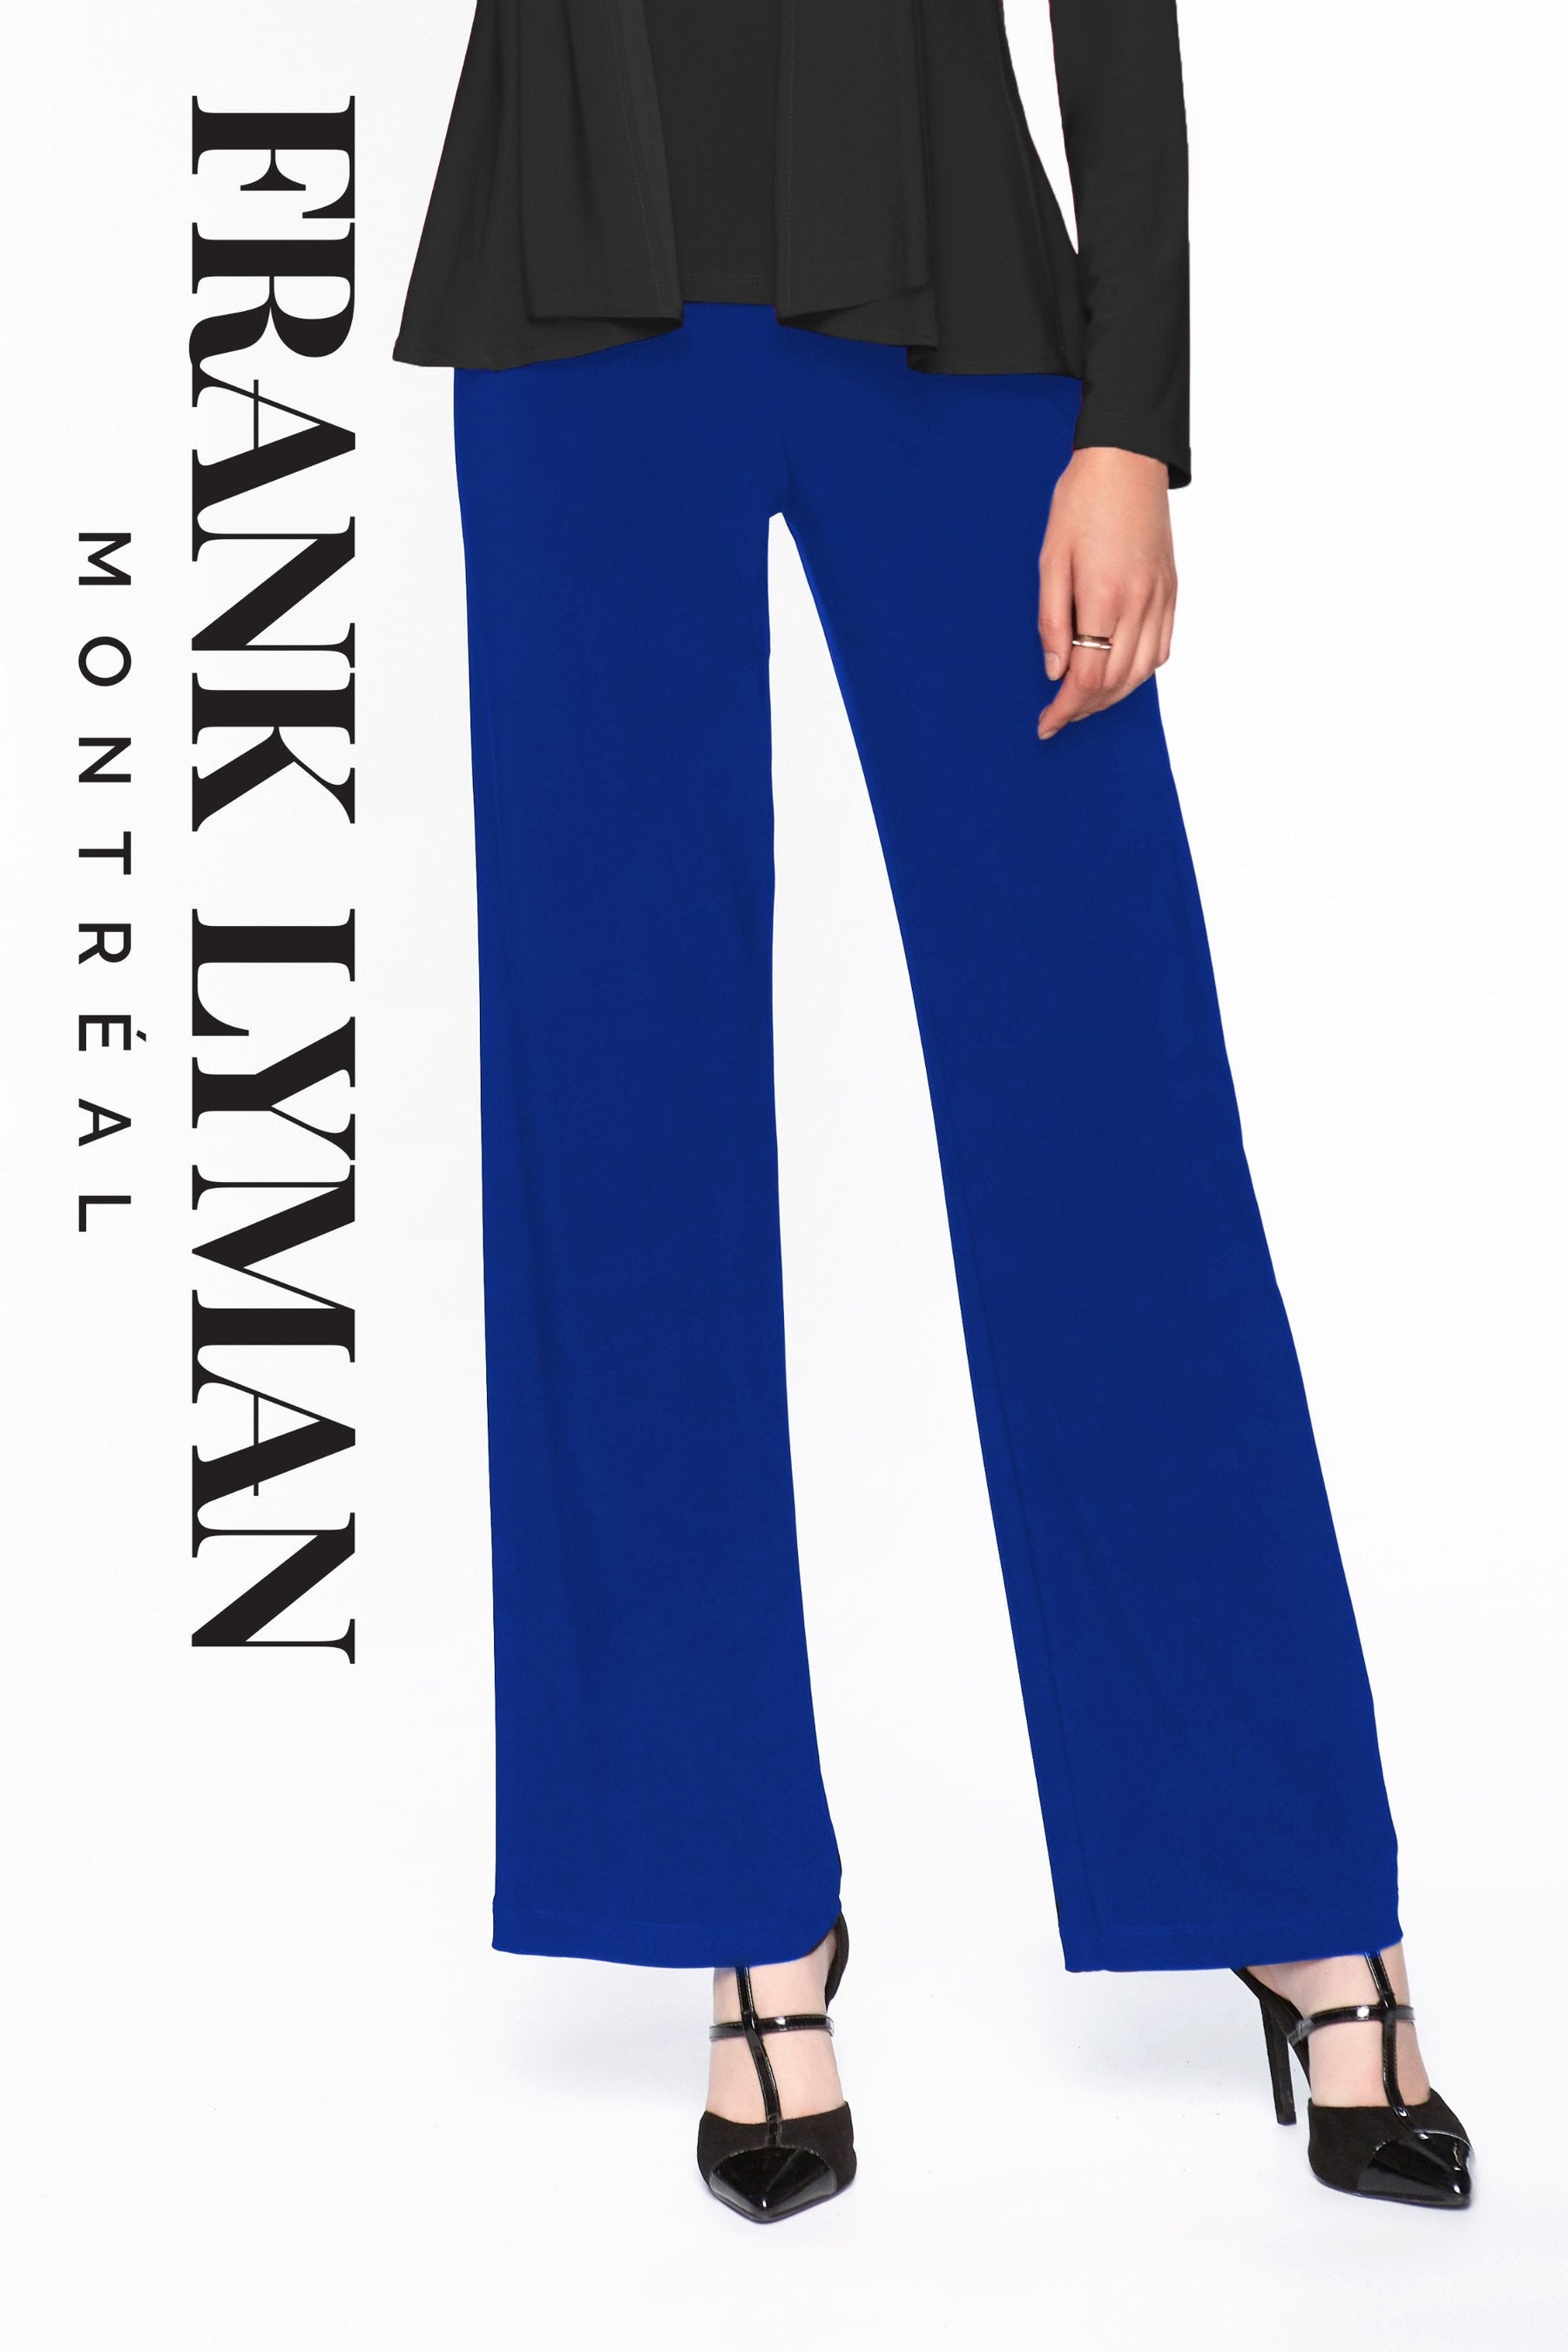 Pantalon en Knit Frank Lyman - 006 U-BLUE - Boutique Vvög, référence en mode pour homme et femme